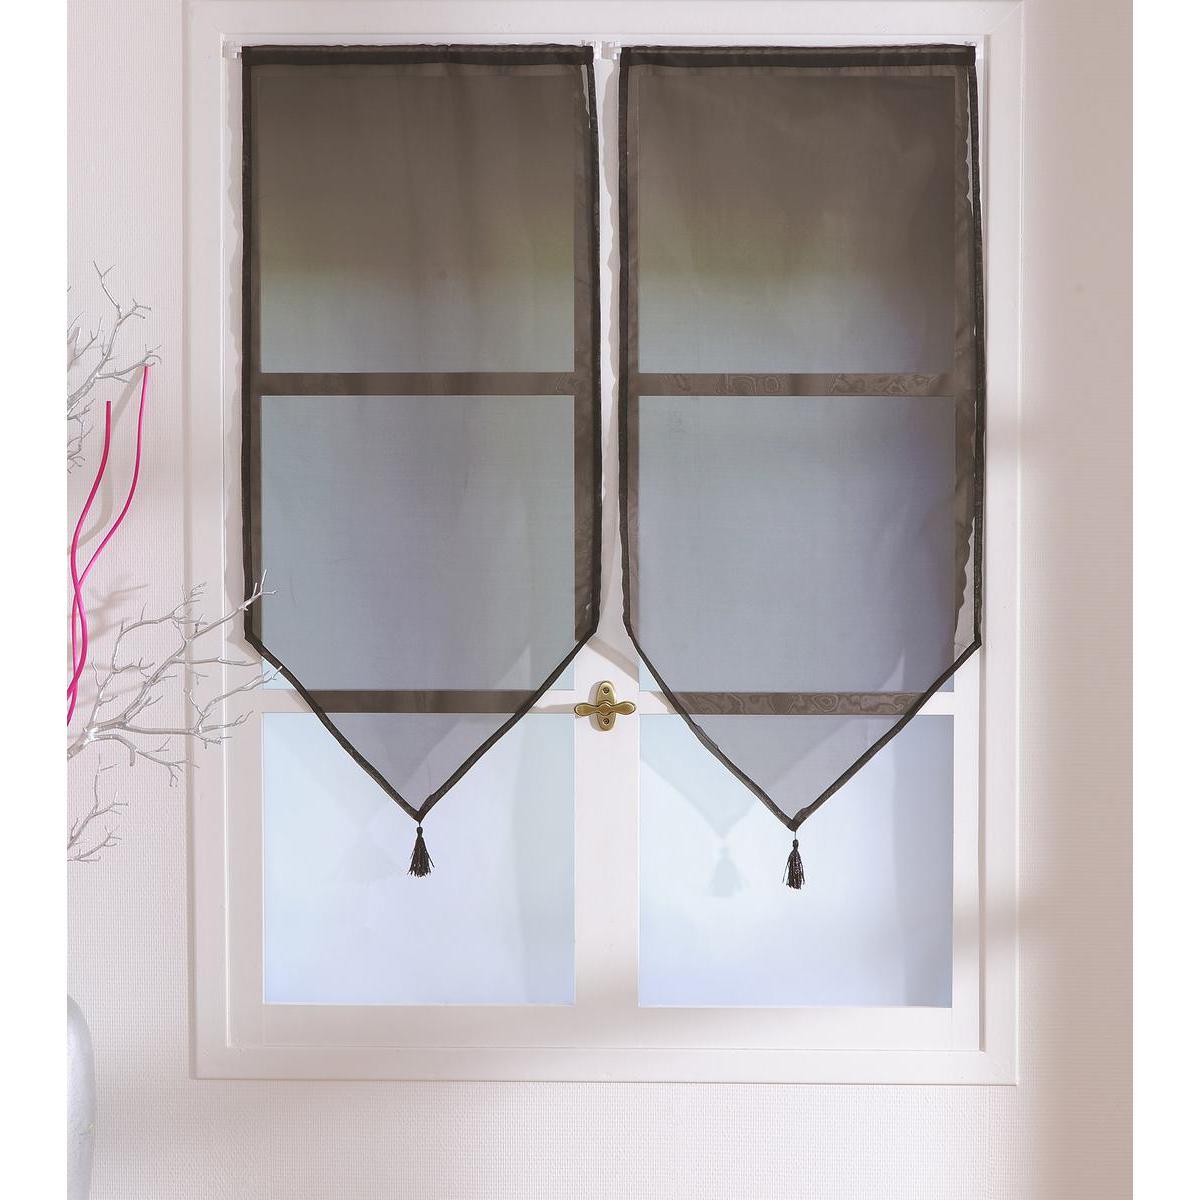 Paire de vitrages - 100% polyester - 60 x 90 cm - Marron